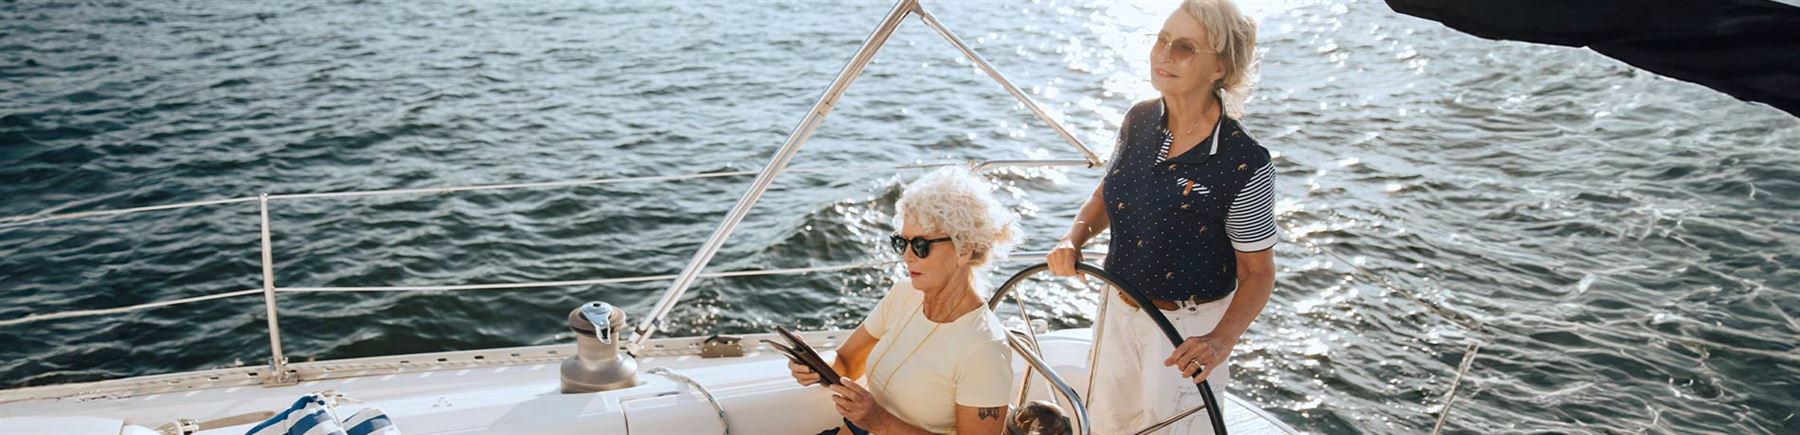 Två äldre kvinnor i en segelbåt på havet.